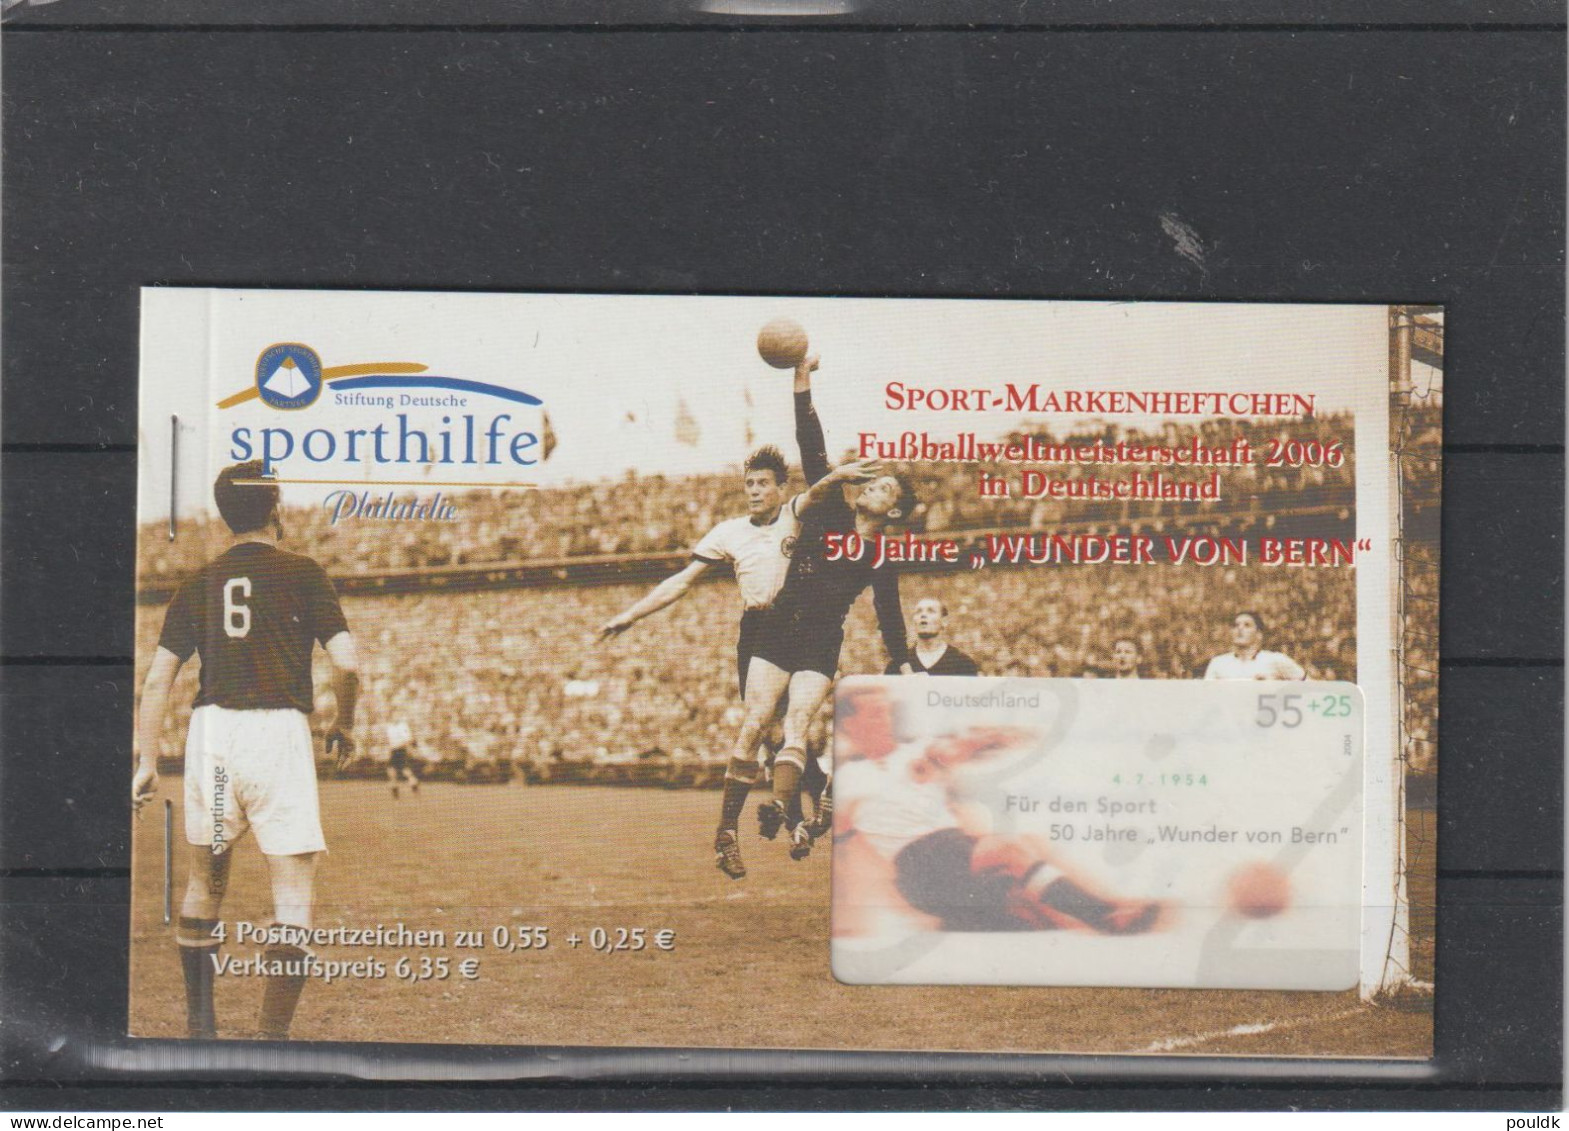 Germany 2006 Sporthilfe Booklet Football 50 Jahre Wunder Von Bern Retail Price 6,25 Euro MNH/**. Postal Weight Approx. 0 - 1954 – Switzerland